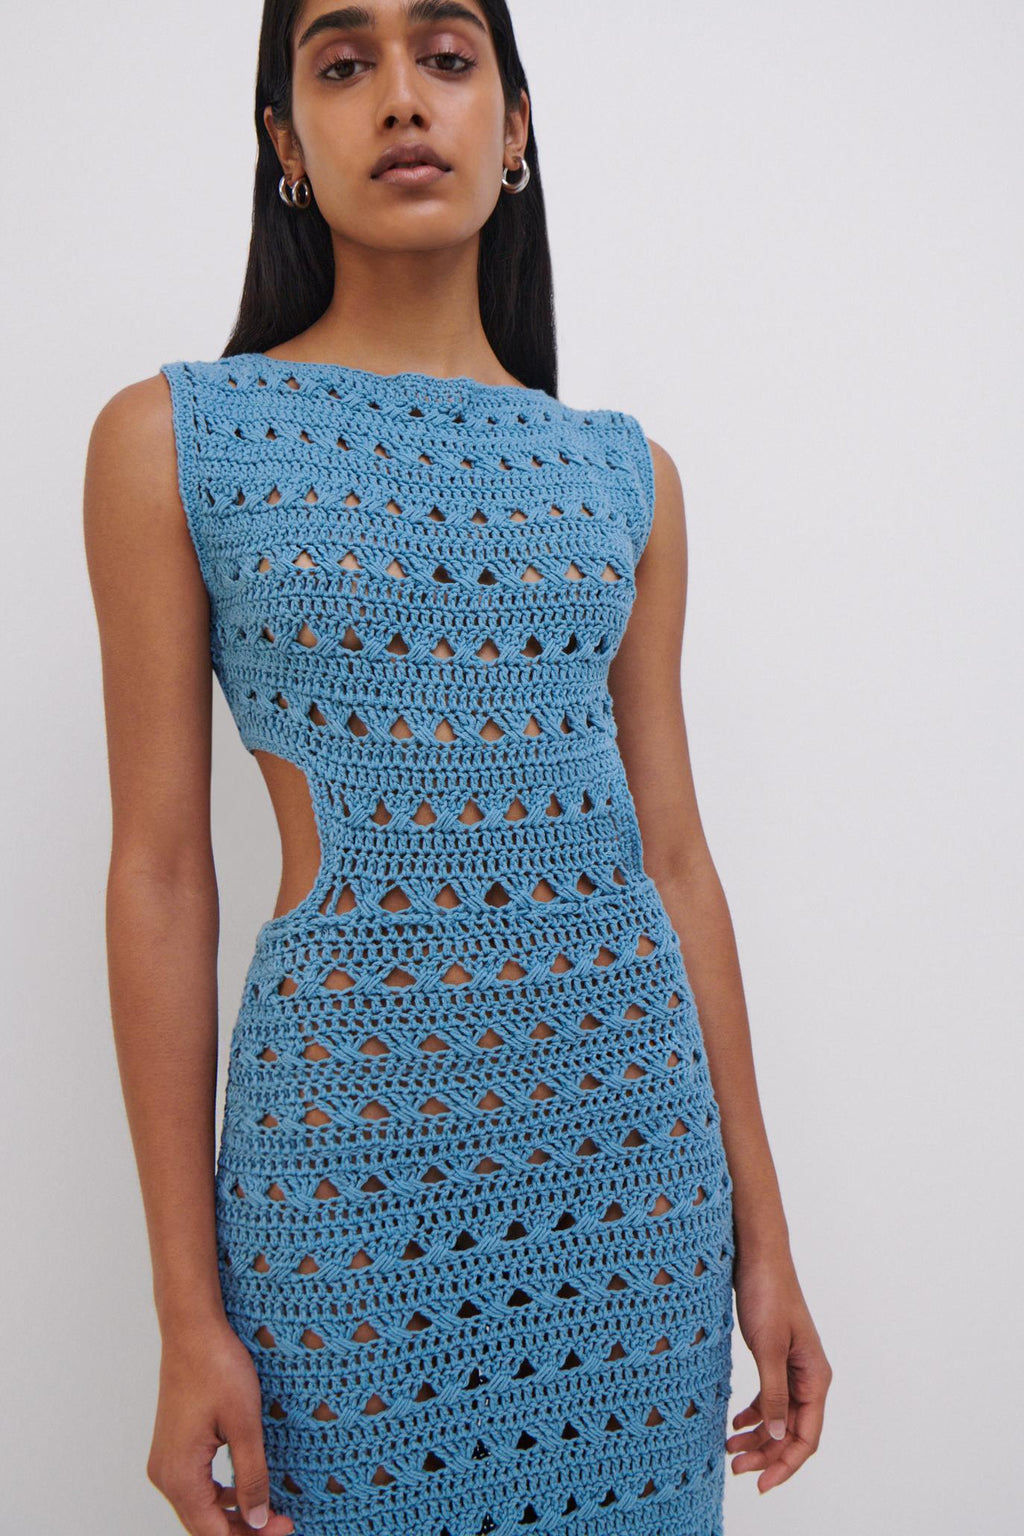 JS x Elexiay Crochet Dress